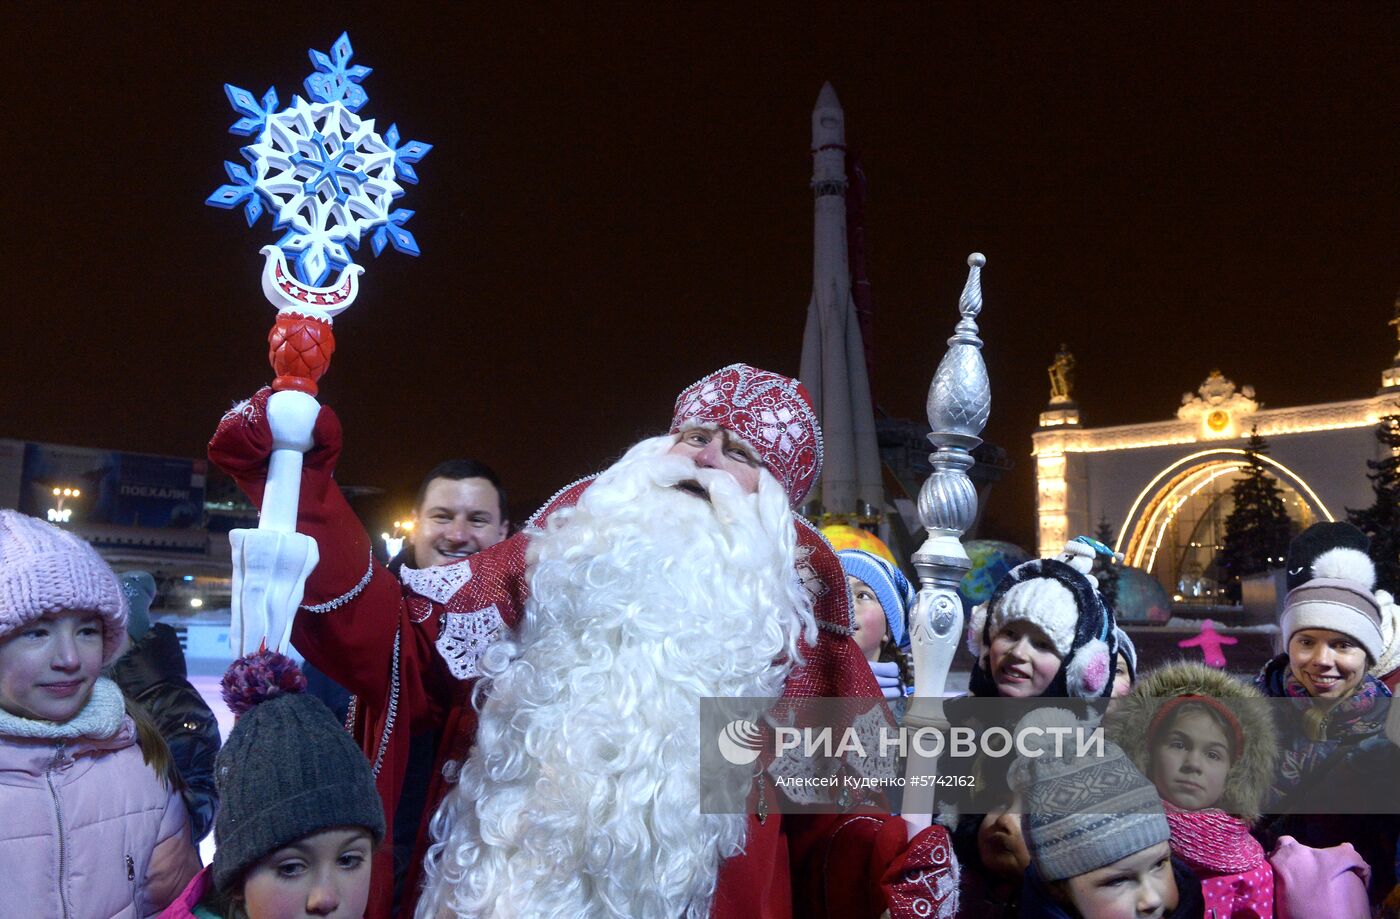 Дед Мороз из Великого Устюга в "Городе зимы" на ВДНХ